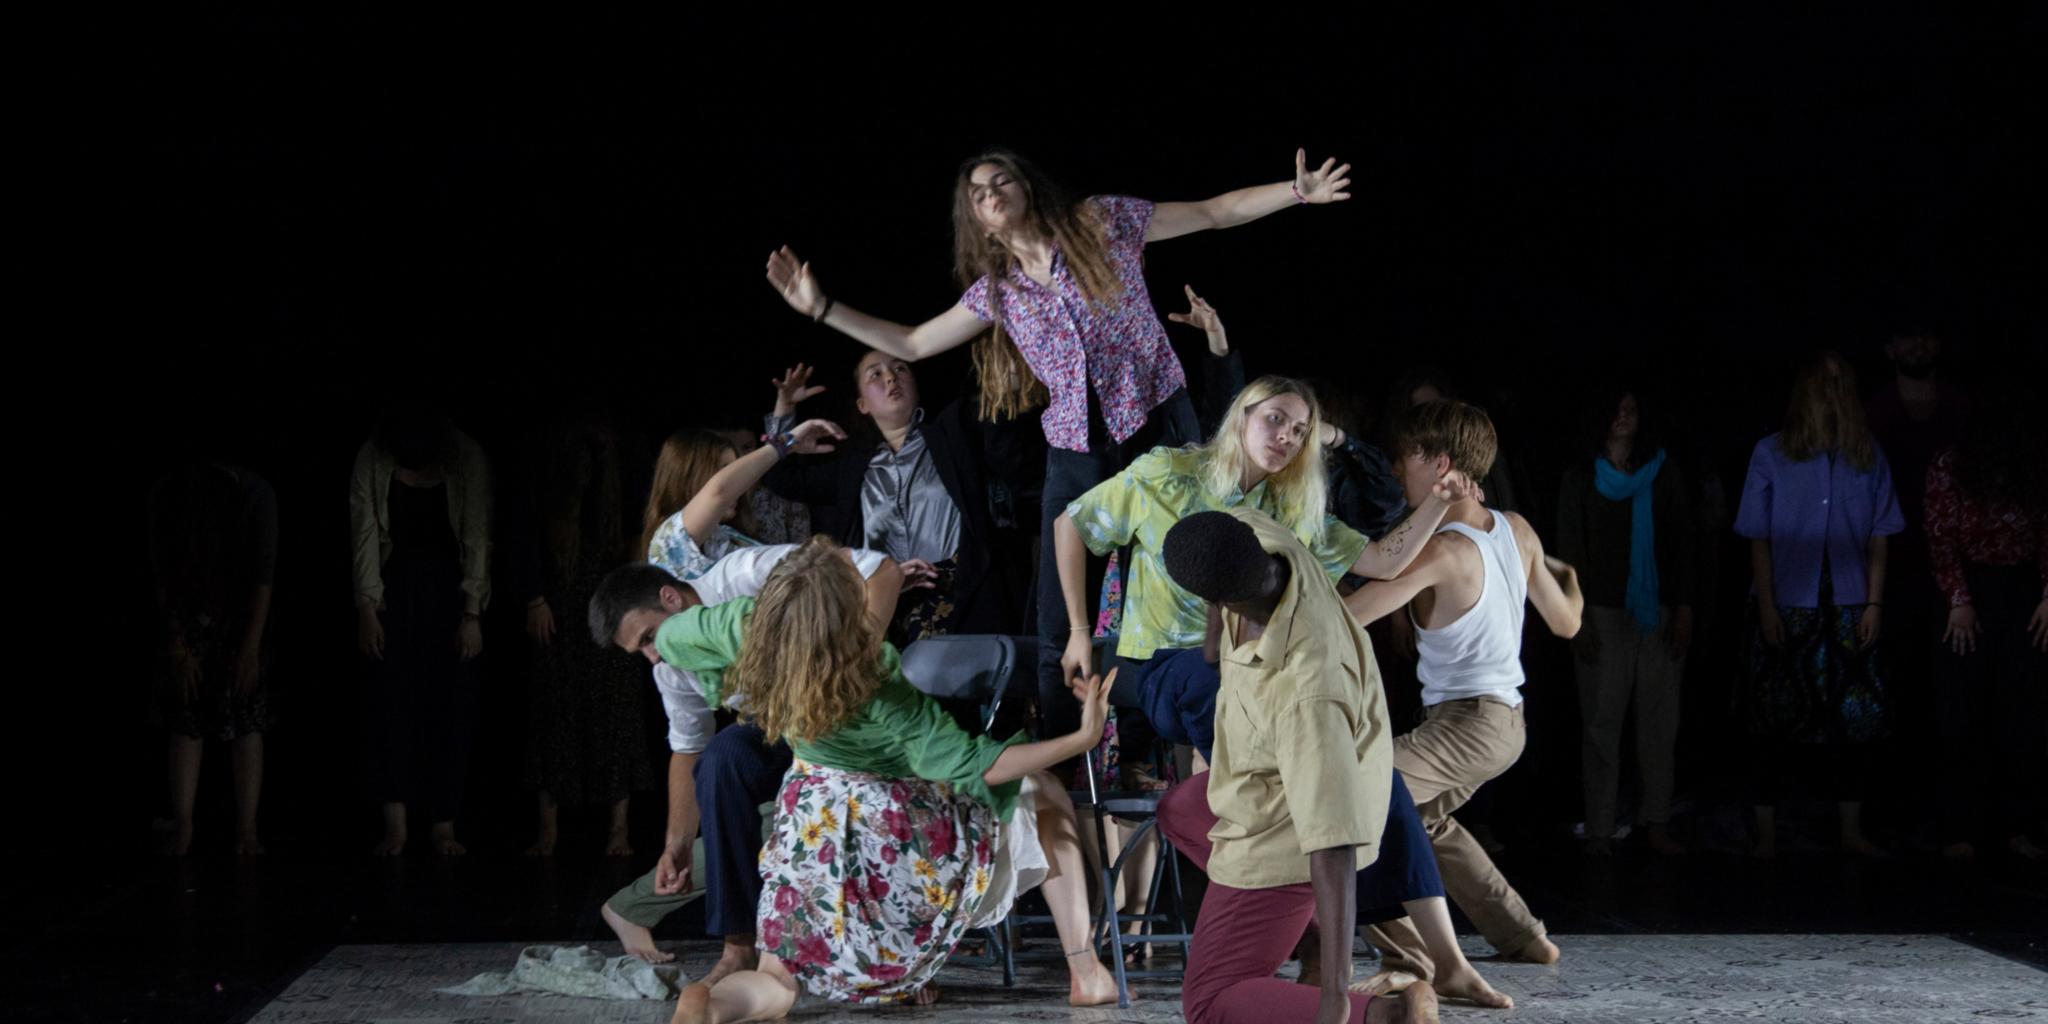 Bildunterschrift: Jugendliche beim Tanztheaterprojekt „Passagen“ 2018 in Portou/Frankreich. Foto: Veranstalter